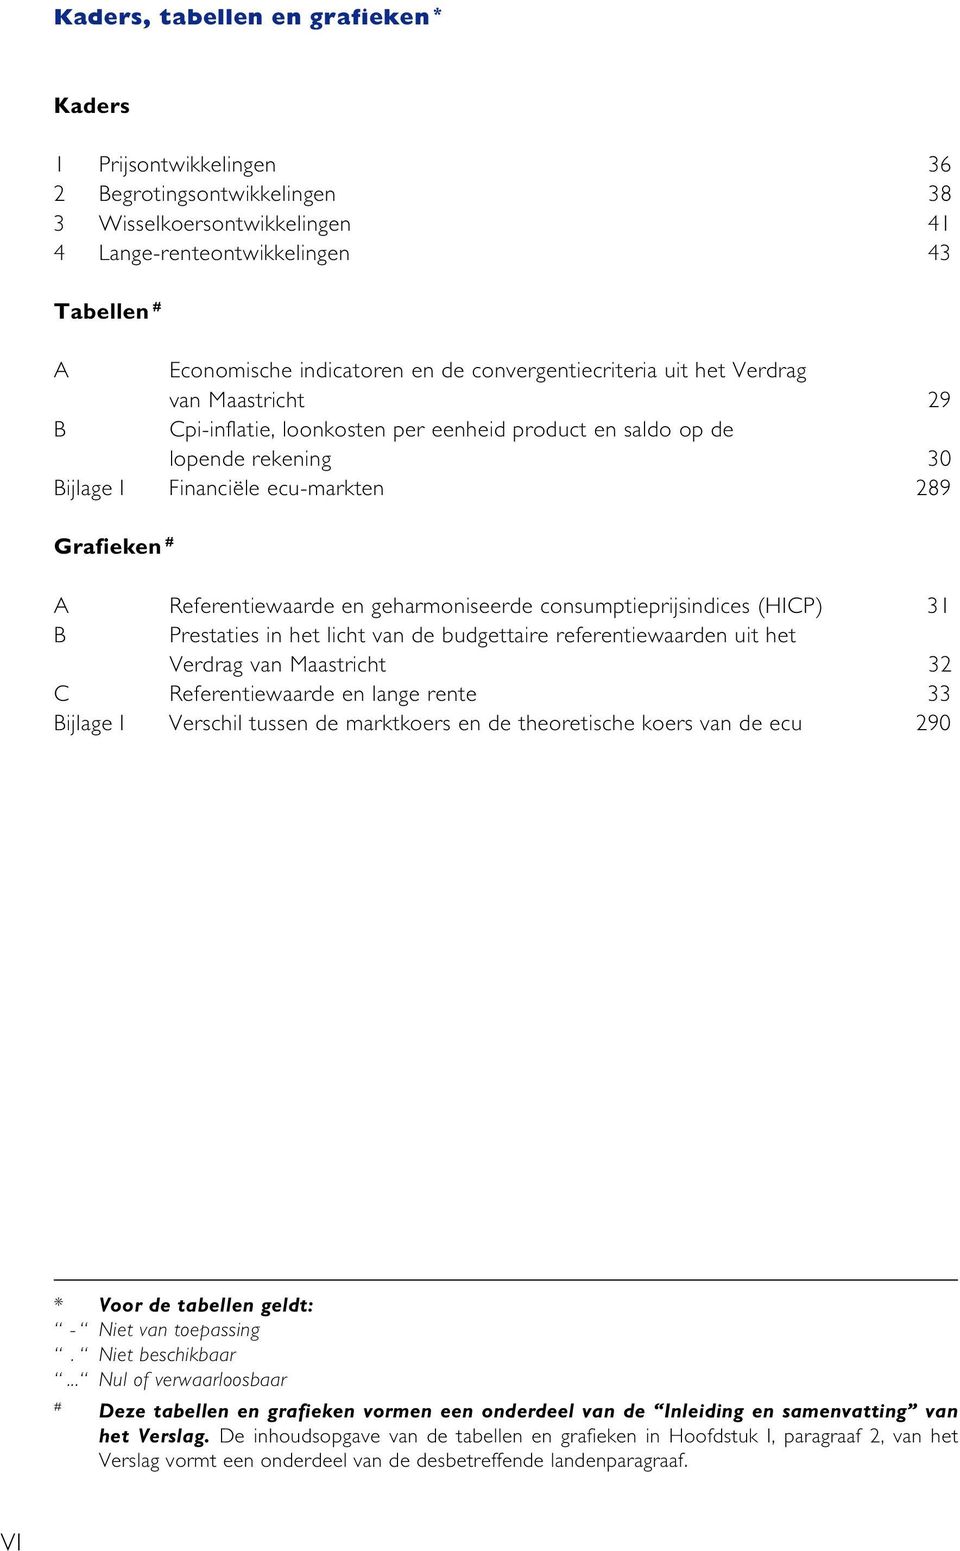 Referentiewaarde en geharmoniseerde consumptieprijsindices (HICP) 31 B Prestaties in het licht van de budgettaire referentiewaarden uit het Verdrag van Maastricht 32 C Referentiewaarde en lange rente